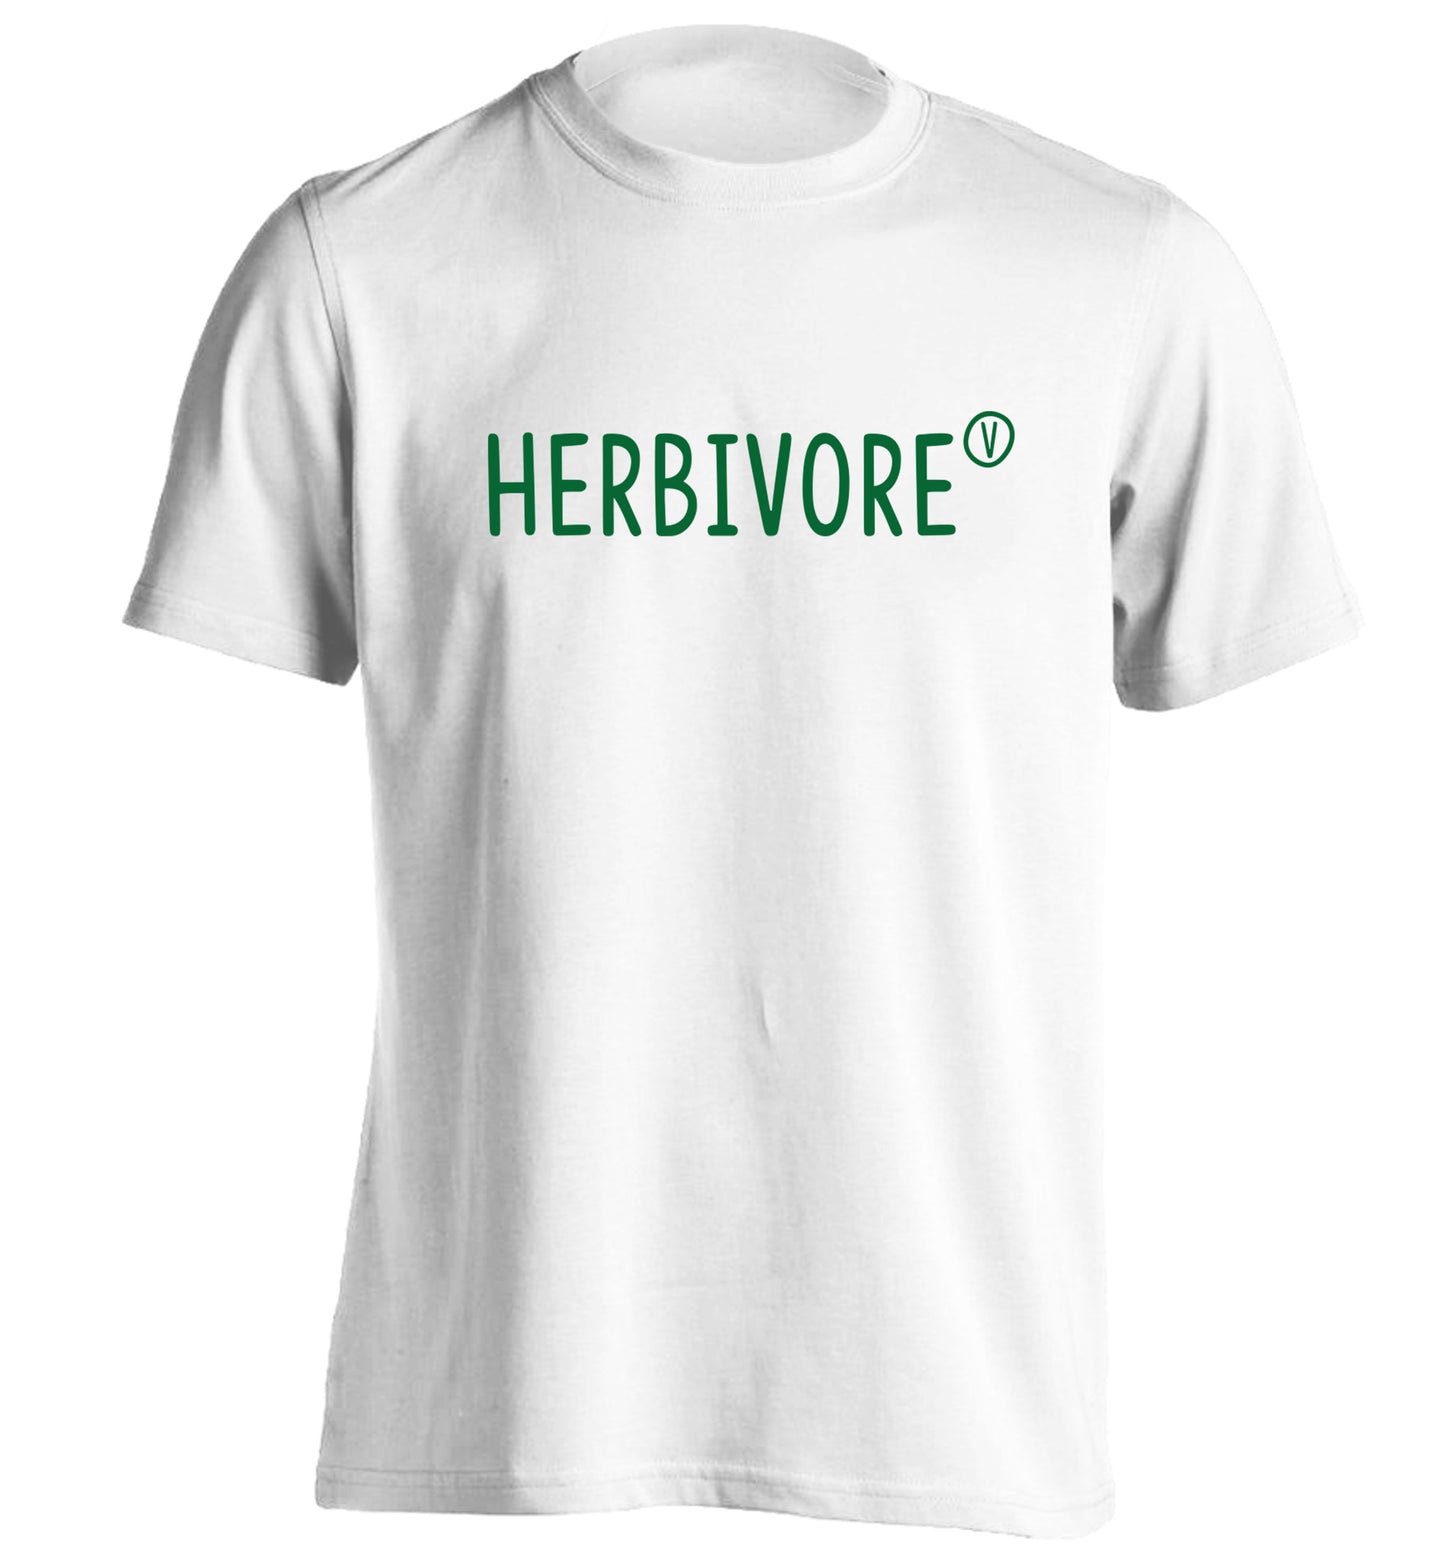 Herbivore adults unisex white Tshirt 2XL